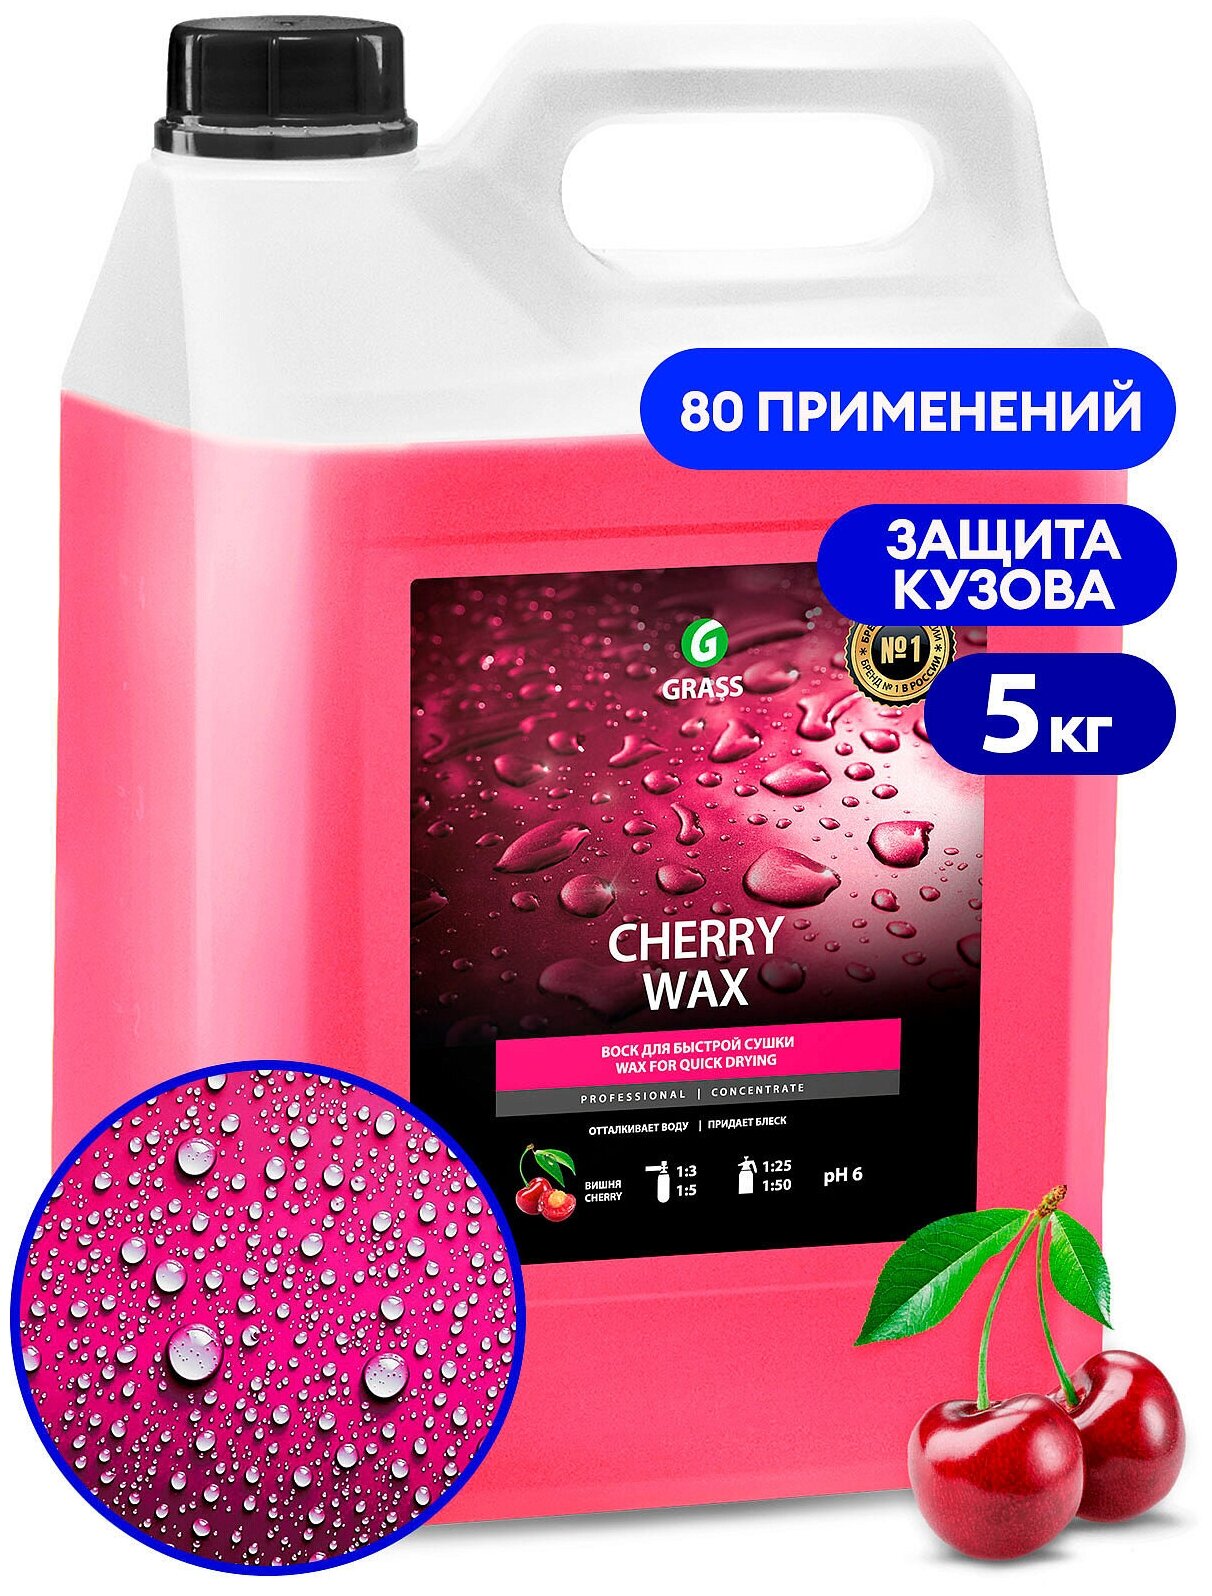 Холодный воск Cherry Wax 5кг